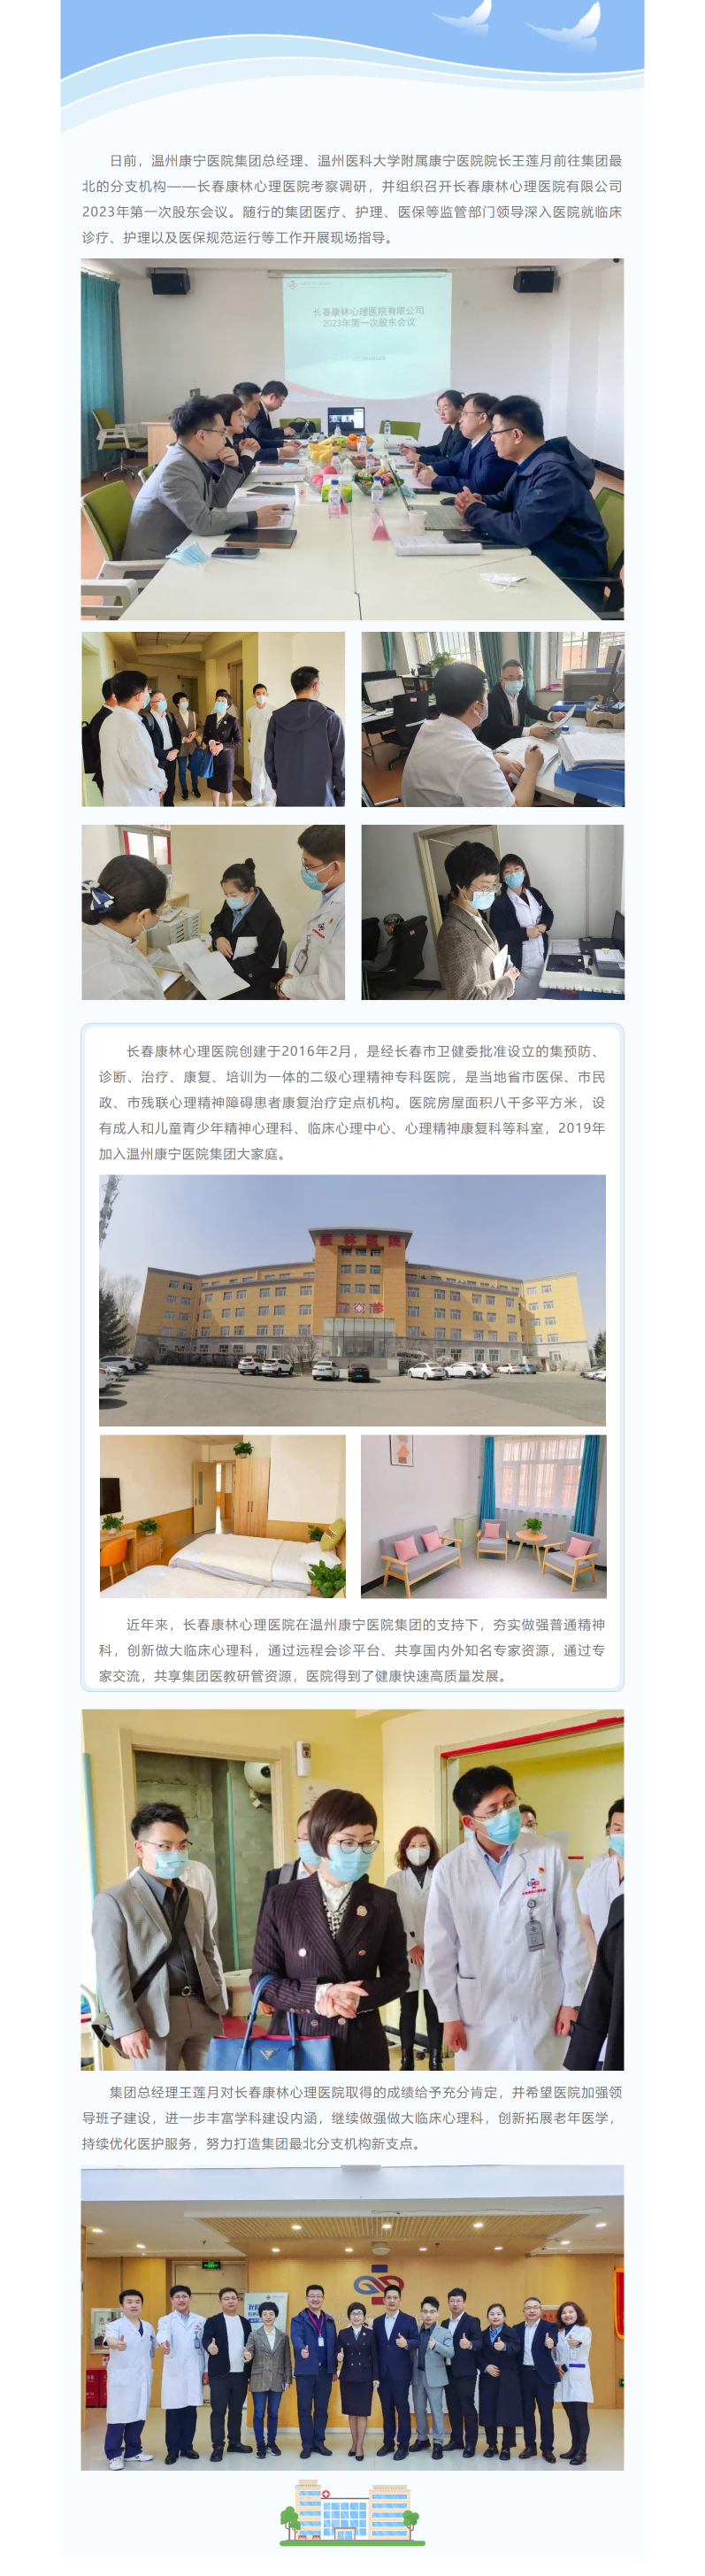 創新求進 _ 長春康林心理醫院打造集團東北新支點(1).png